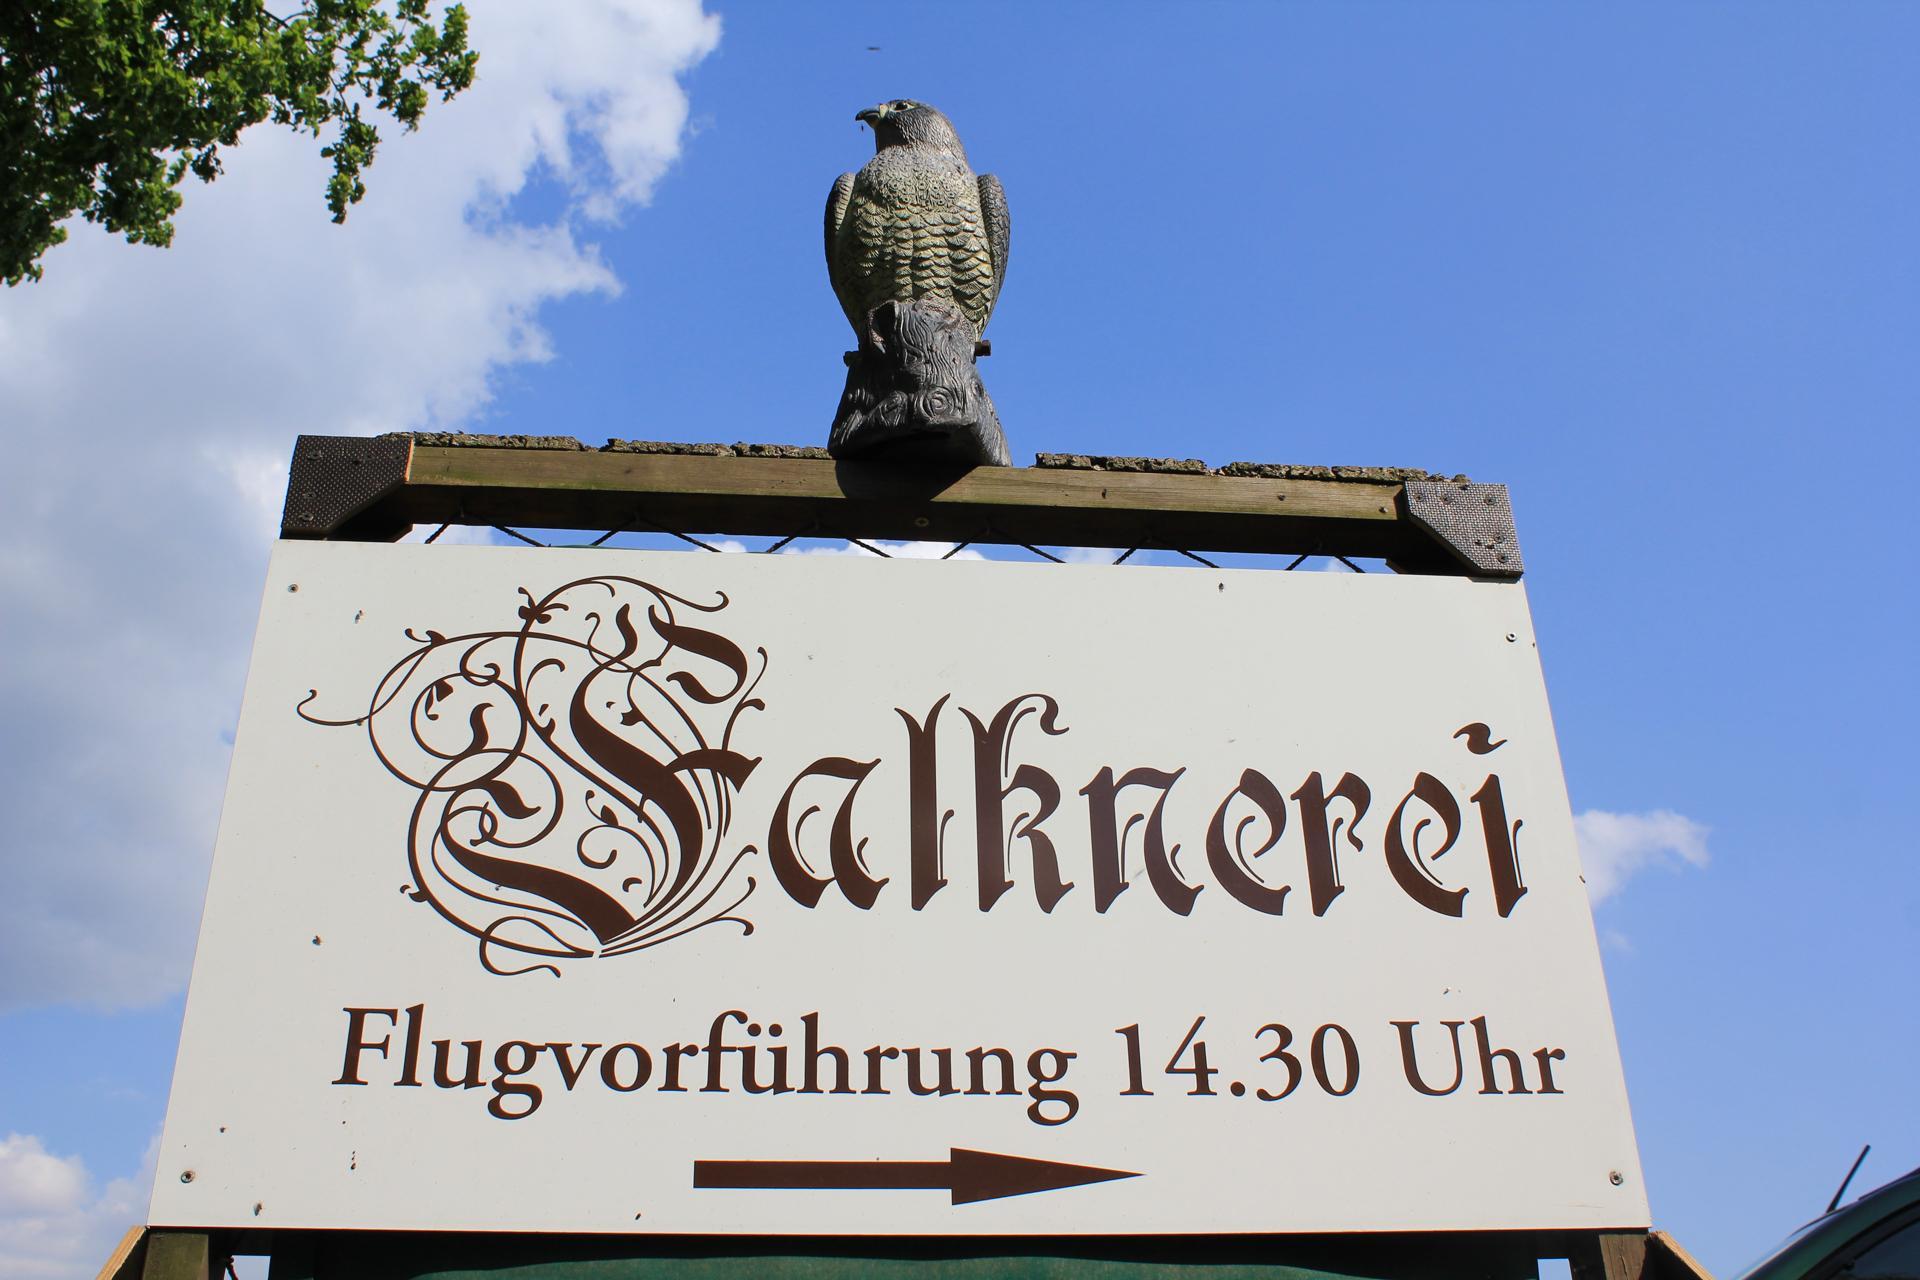 Hinweisschild zur Falknerei an der Burg Rabenstein, Foto: Bansen/Wittig